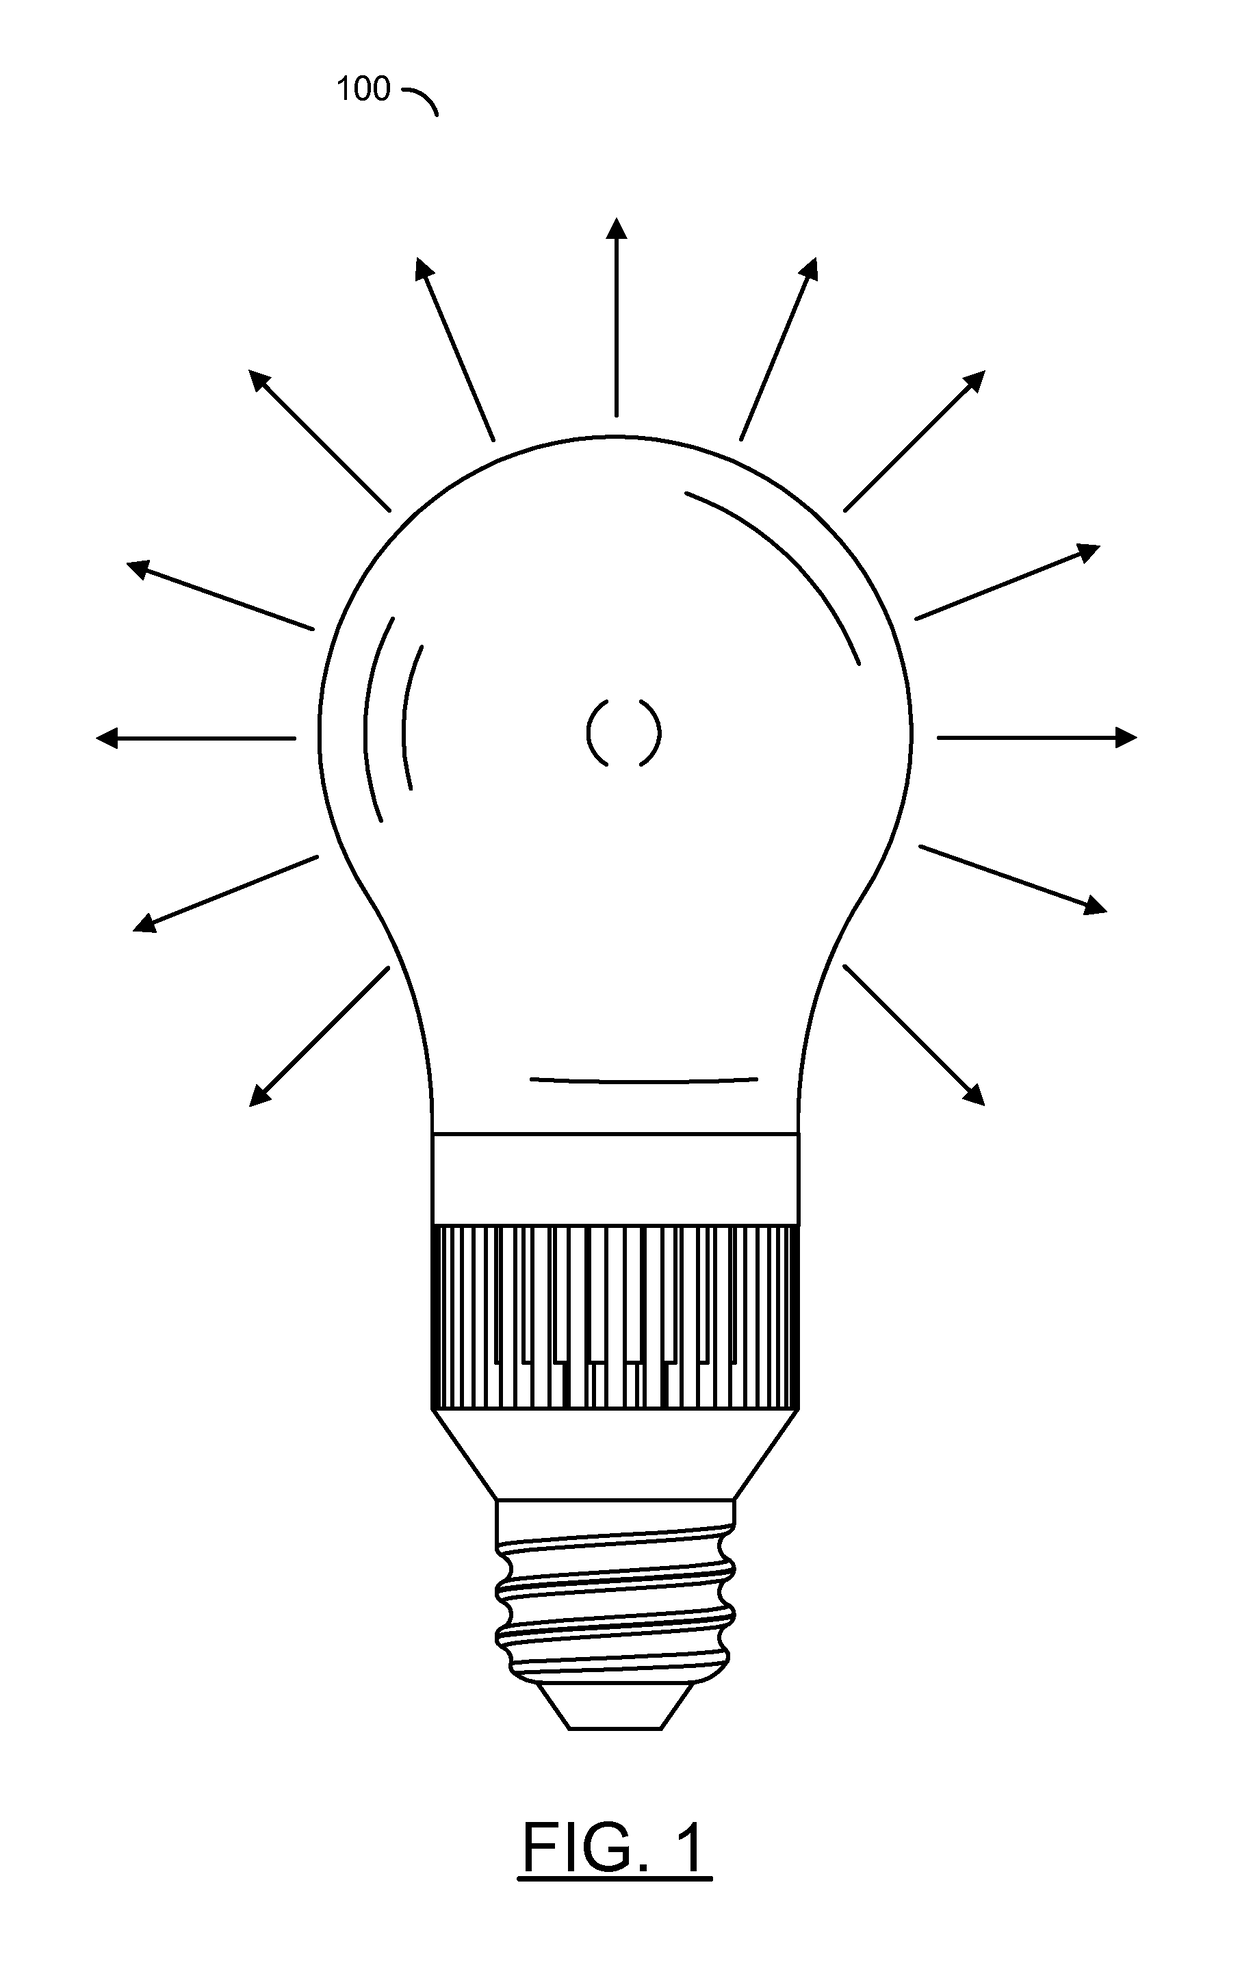 LED lightbulb minimizing LEDs for uniform light distribution